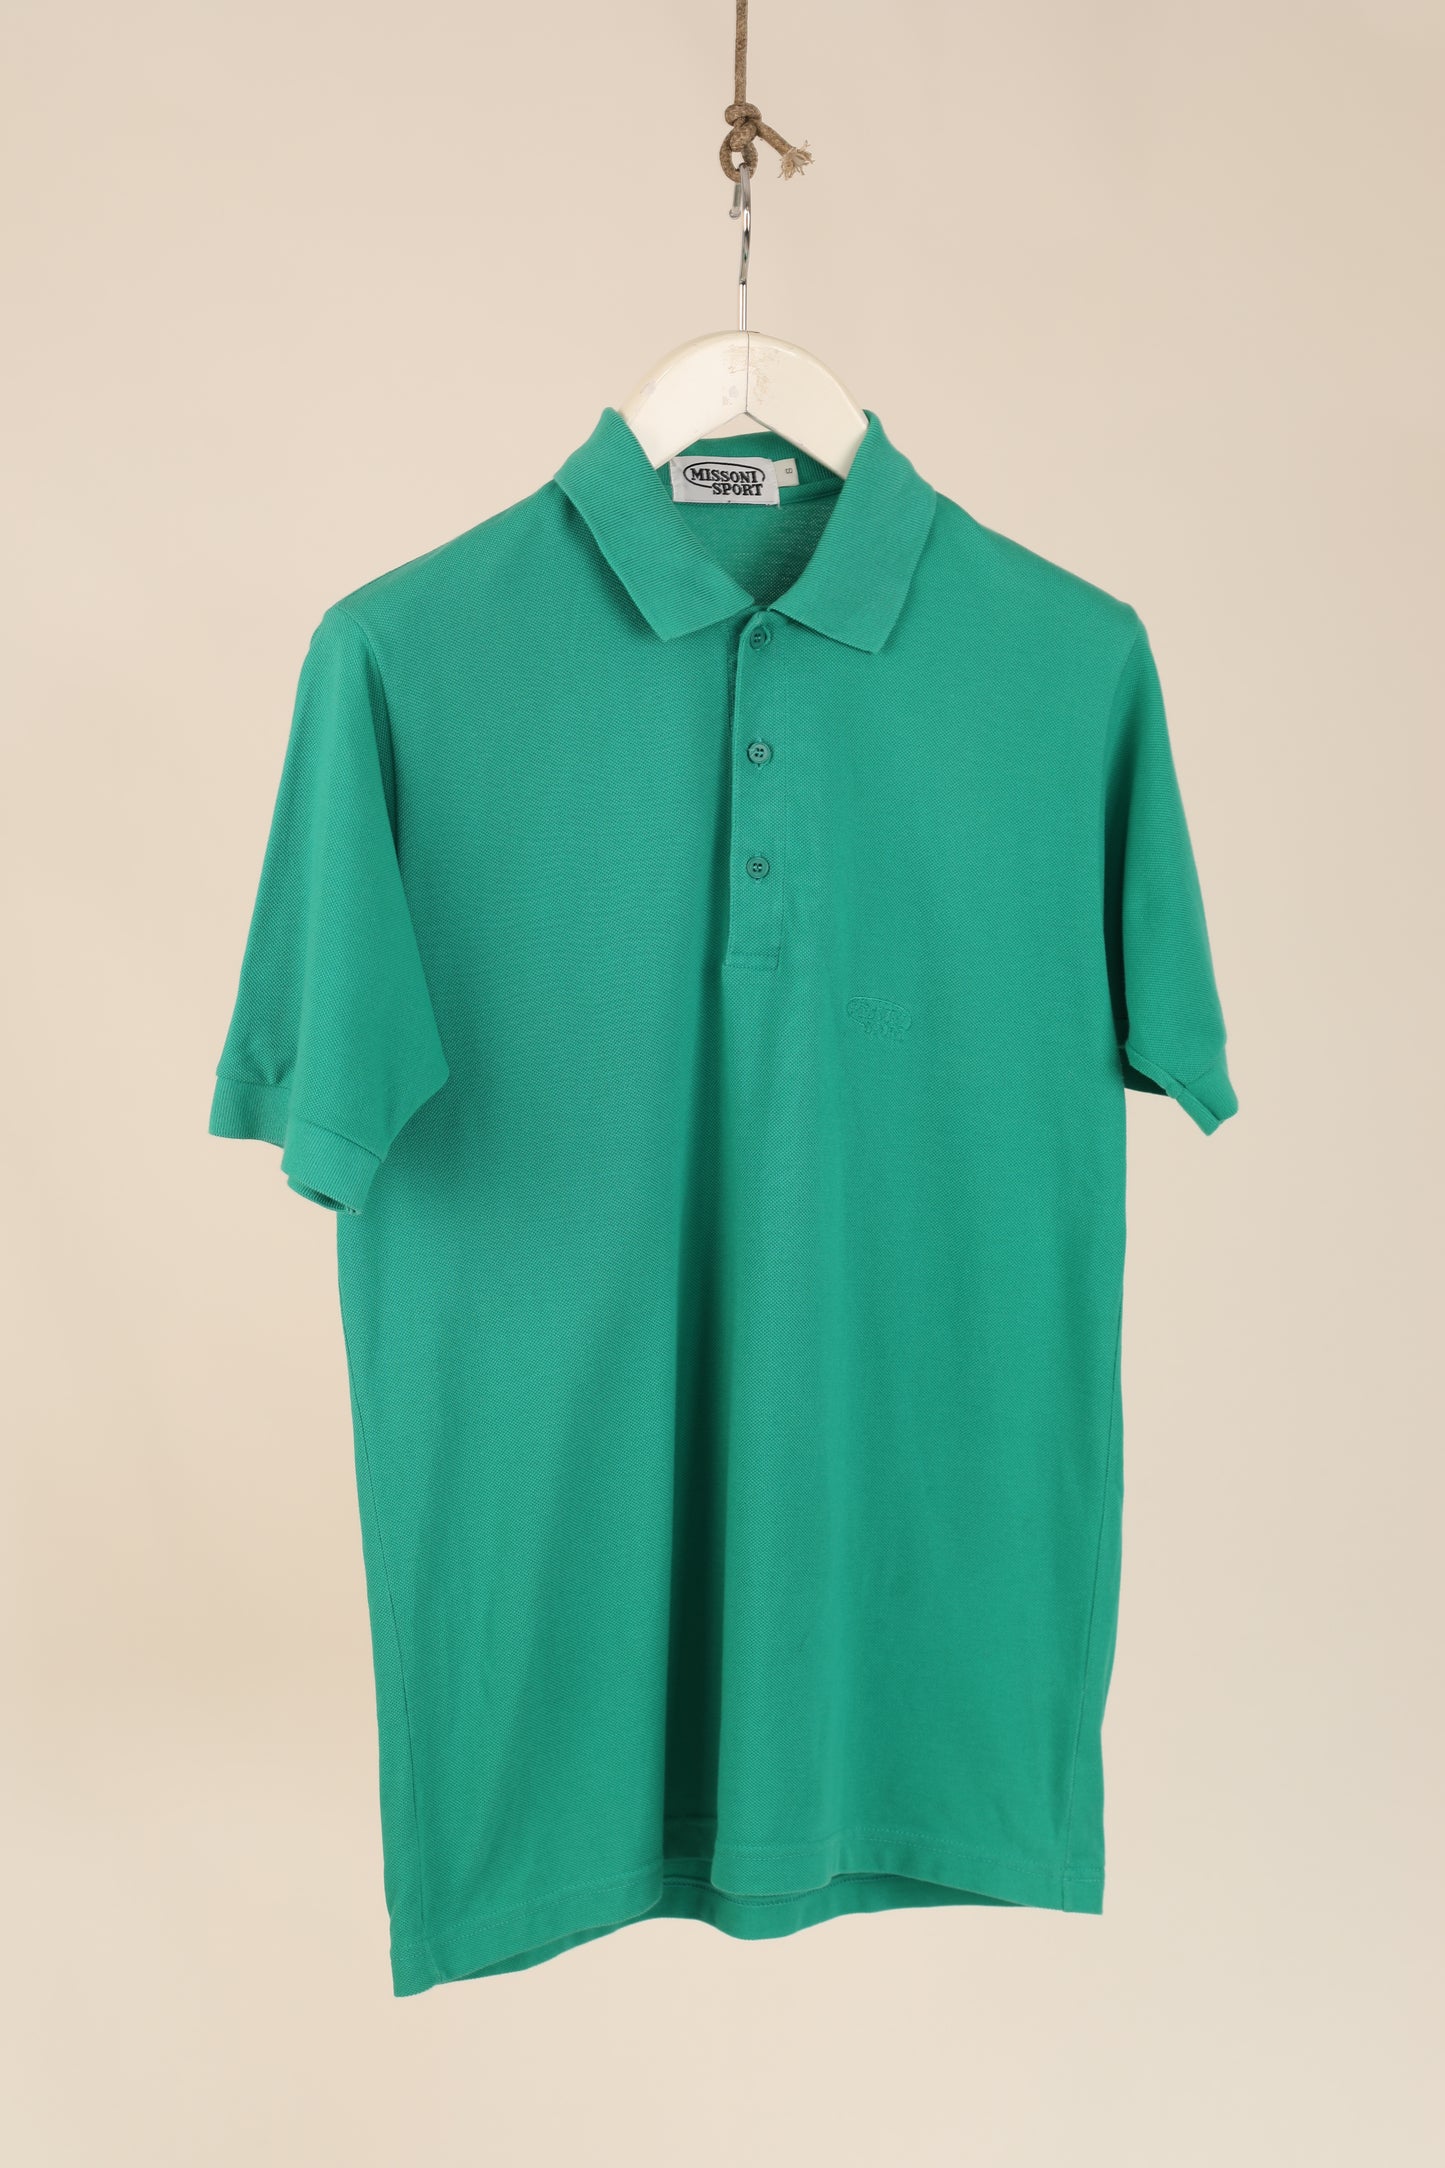 Vintage 90s Missoni polo shirt